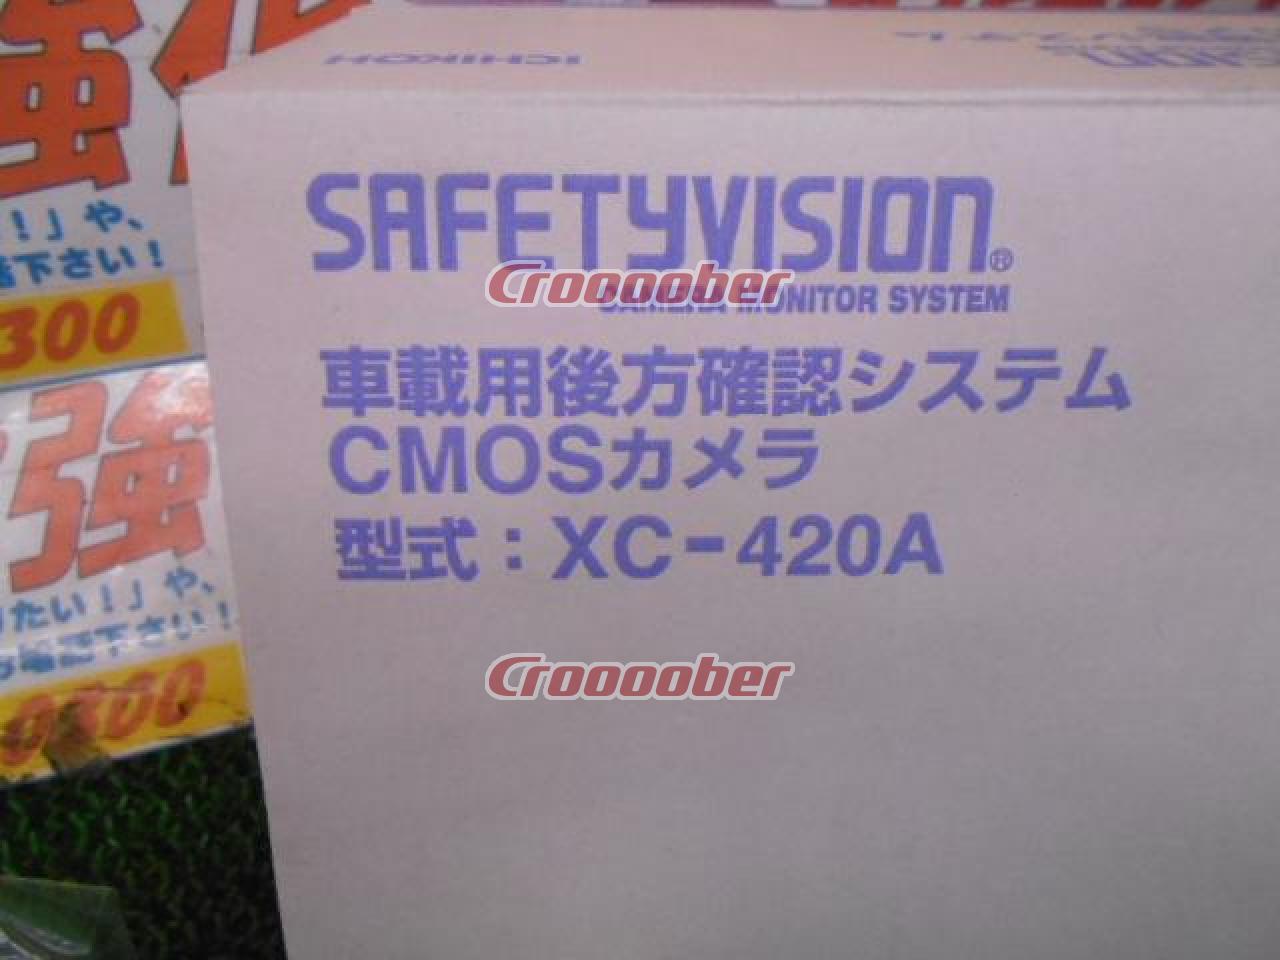 ICHIKOH ドライブレコーダー【ST-9A0FS(7型液晶モニター)+XC-420A(CMOS